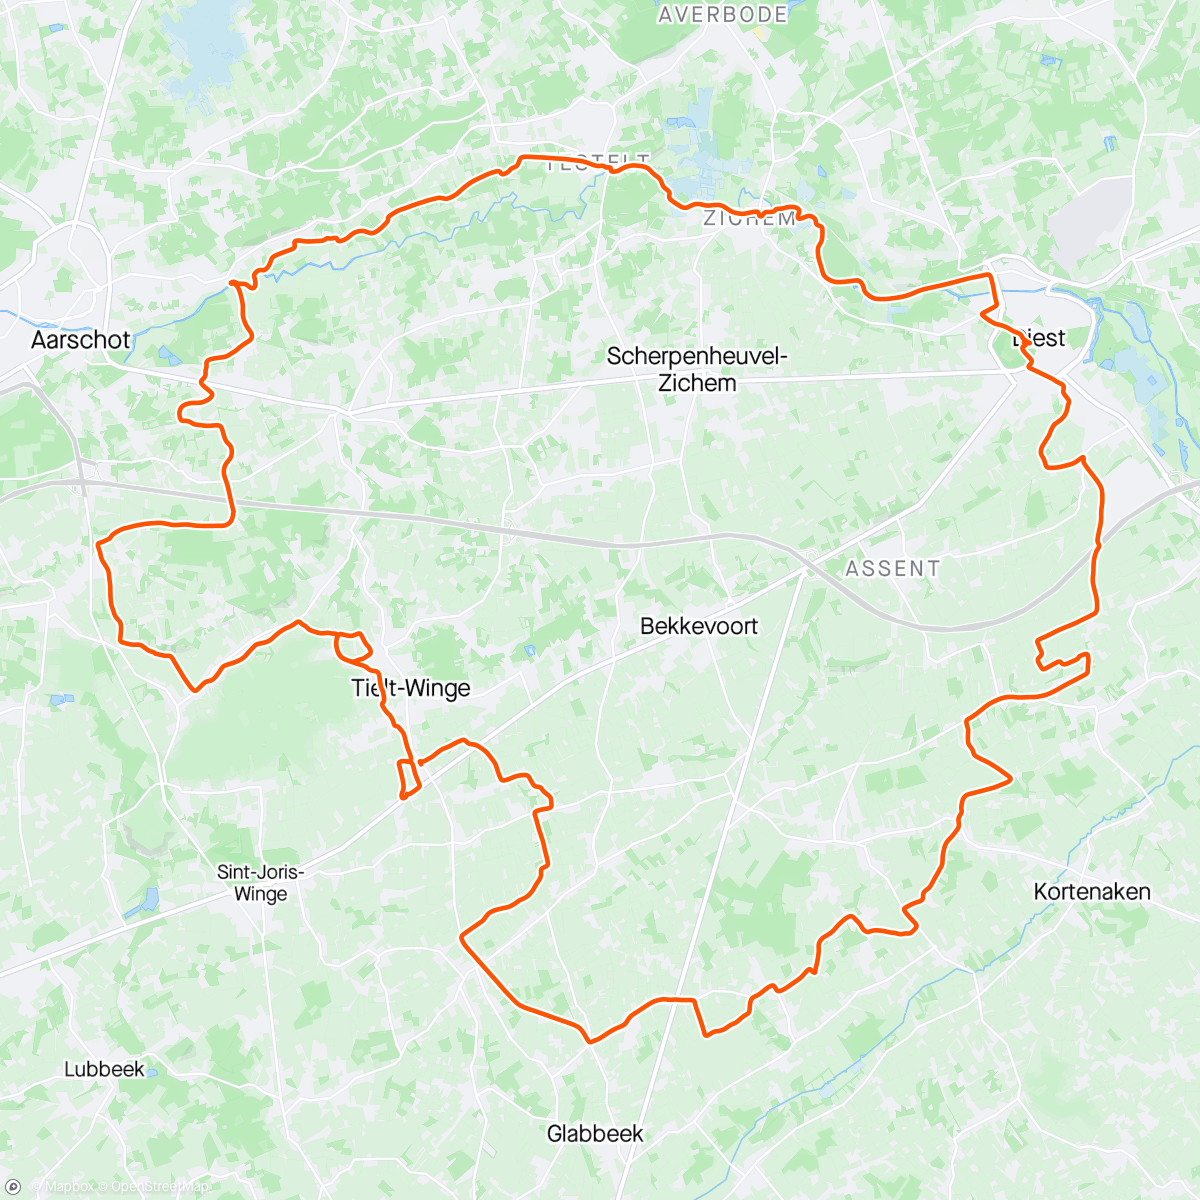 「fiets en schoenenvijs-rit」活動的地圖